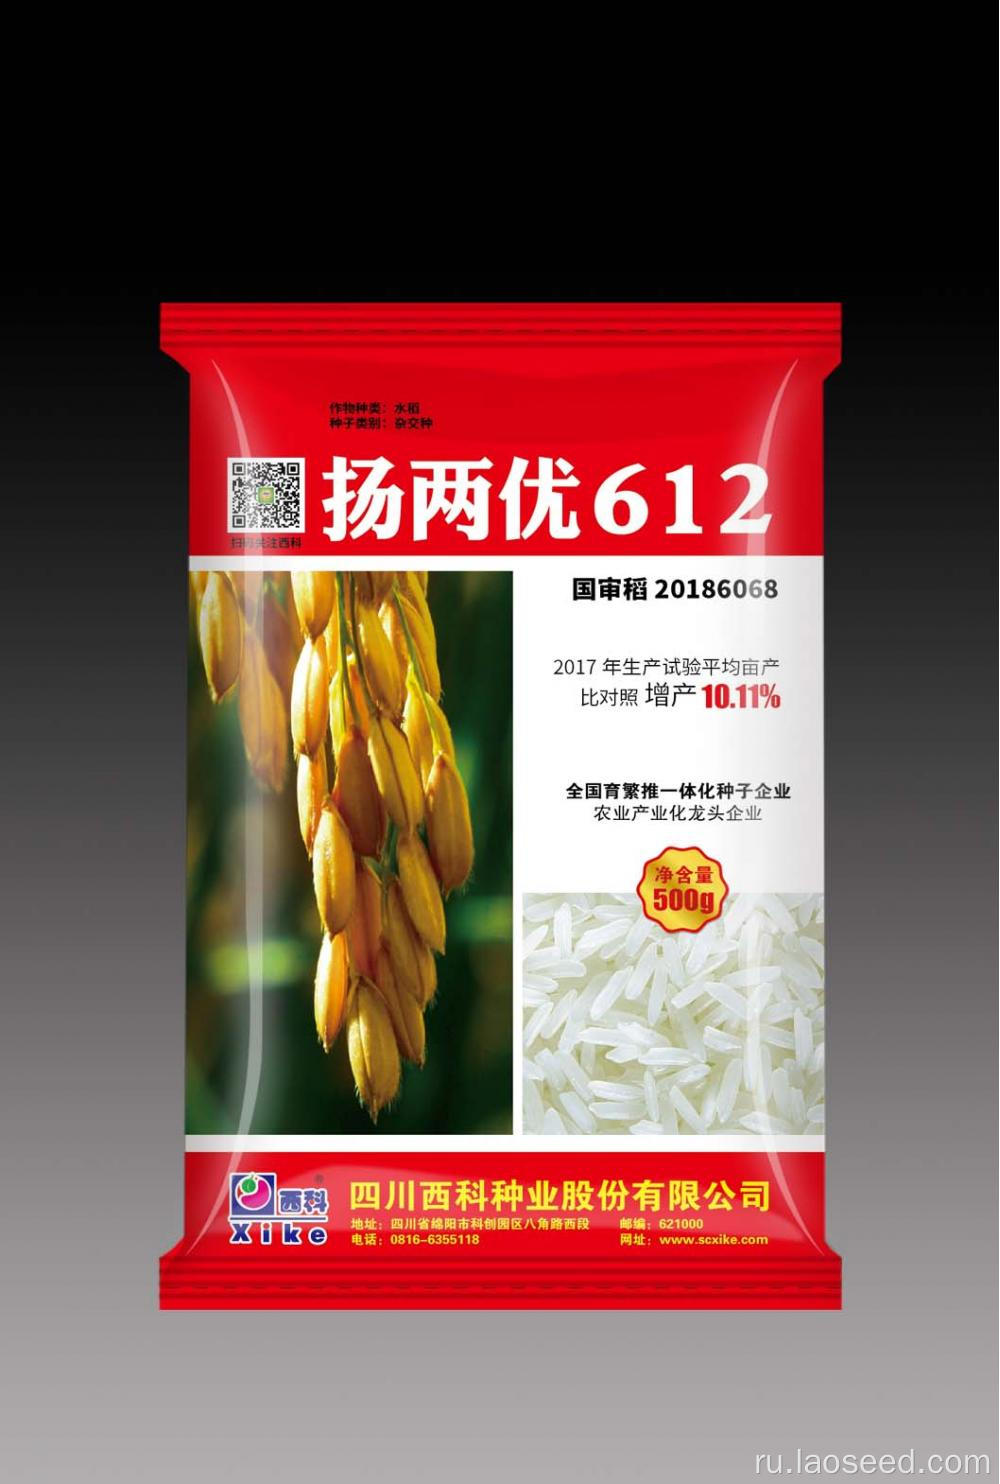 Оптовая конфликтная семена риса Yangliangyou 612